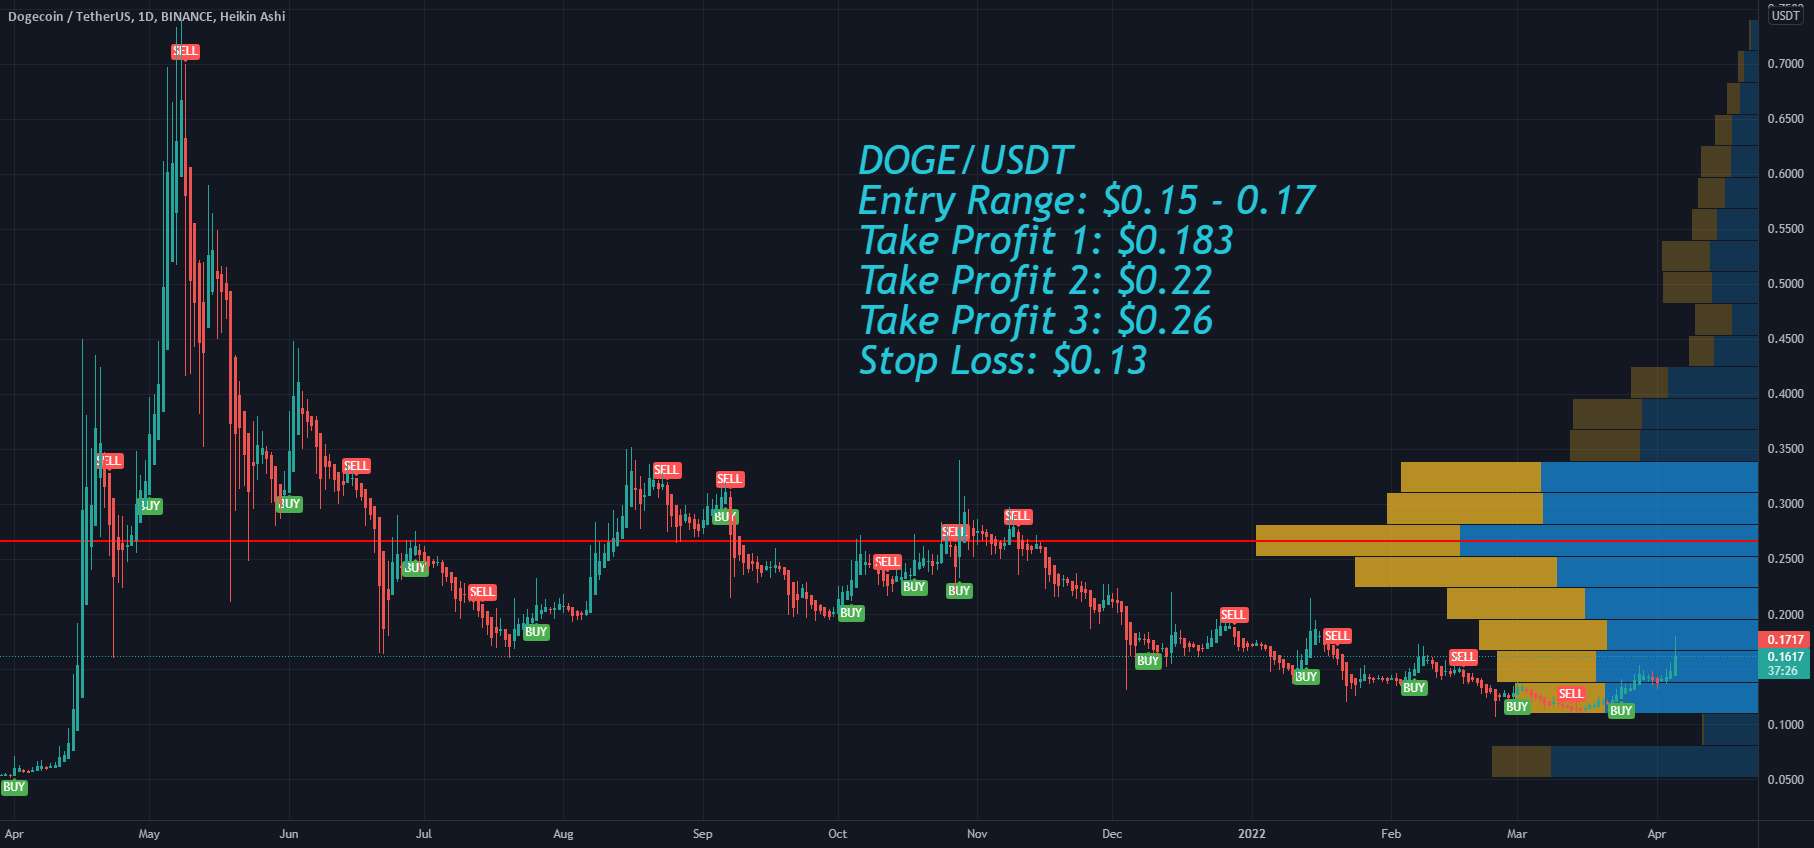  تحلیل دوج کوین - Dogecoin DOGE اهداف قیمت و توقف ضرر